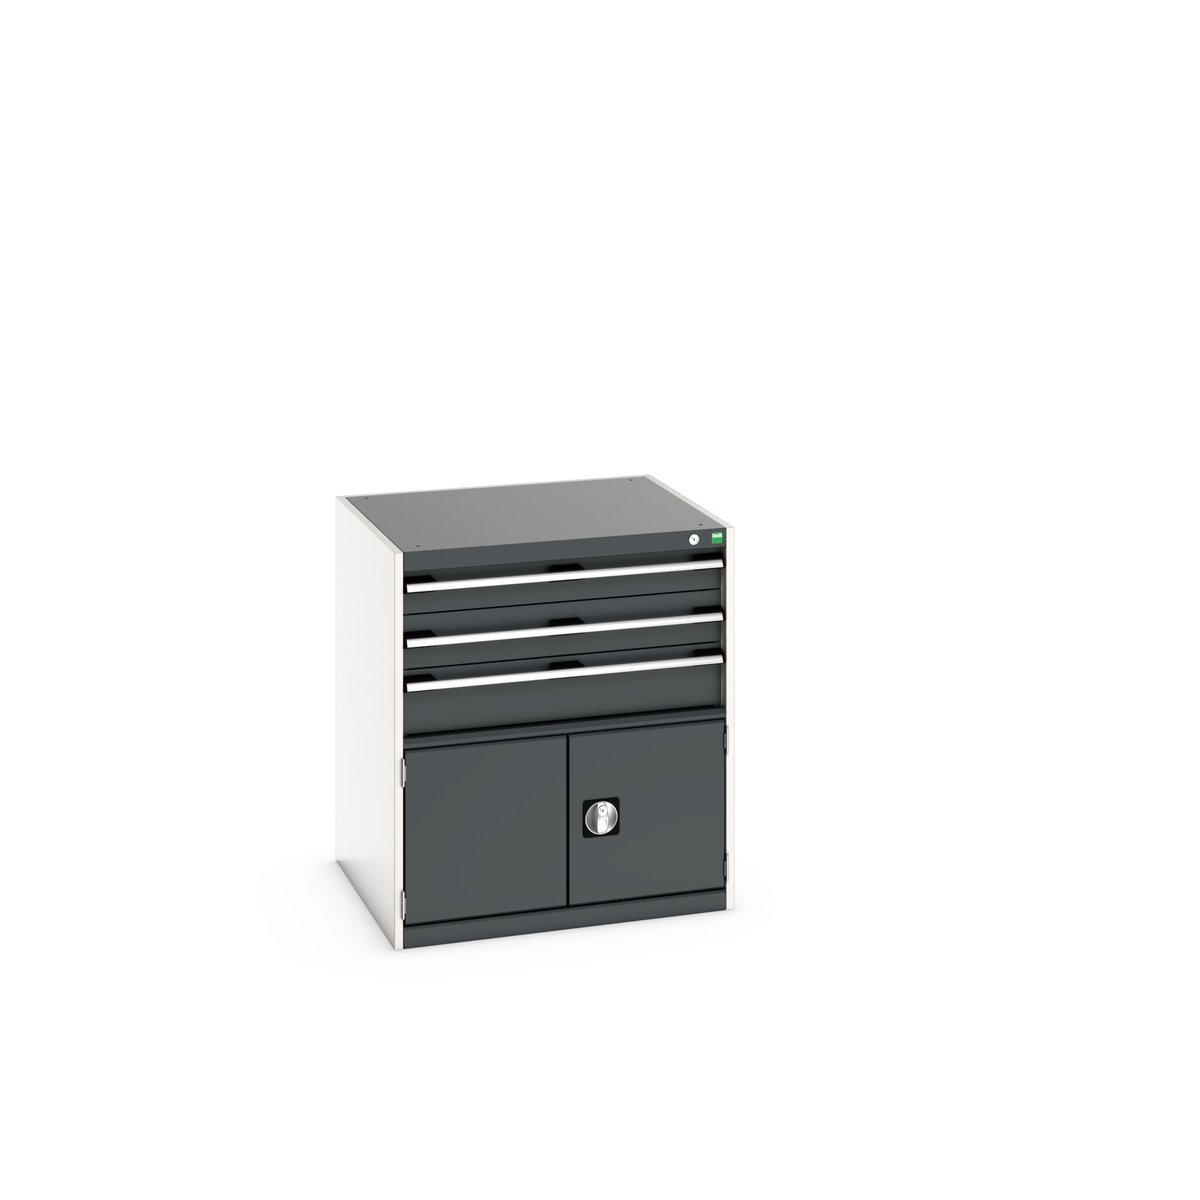 40028104. - cubio drawer-door cabinet